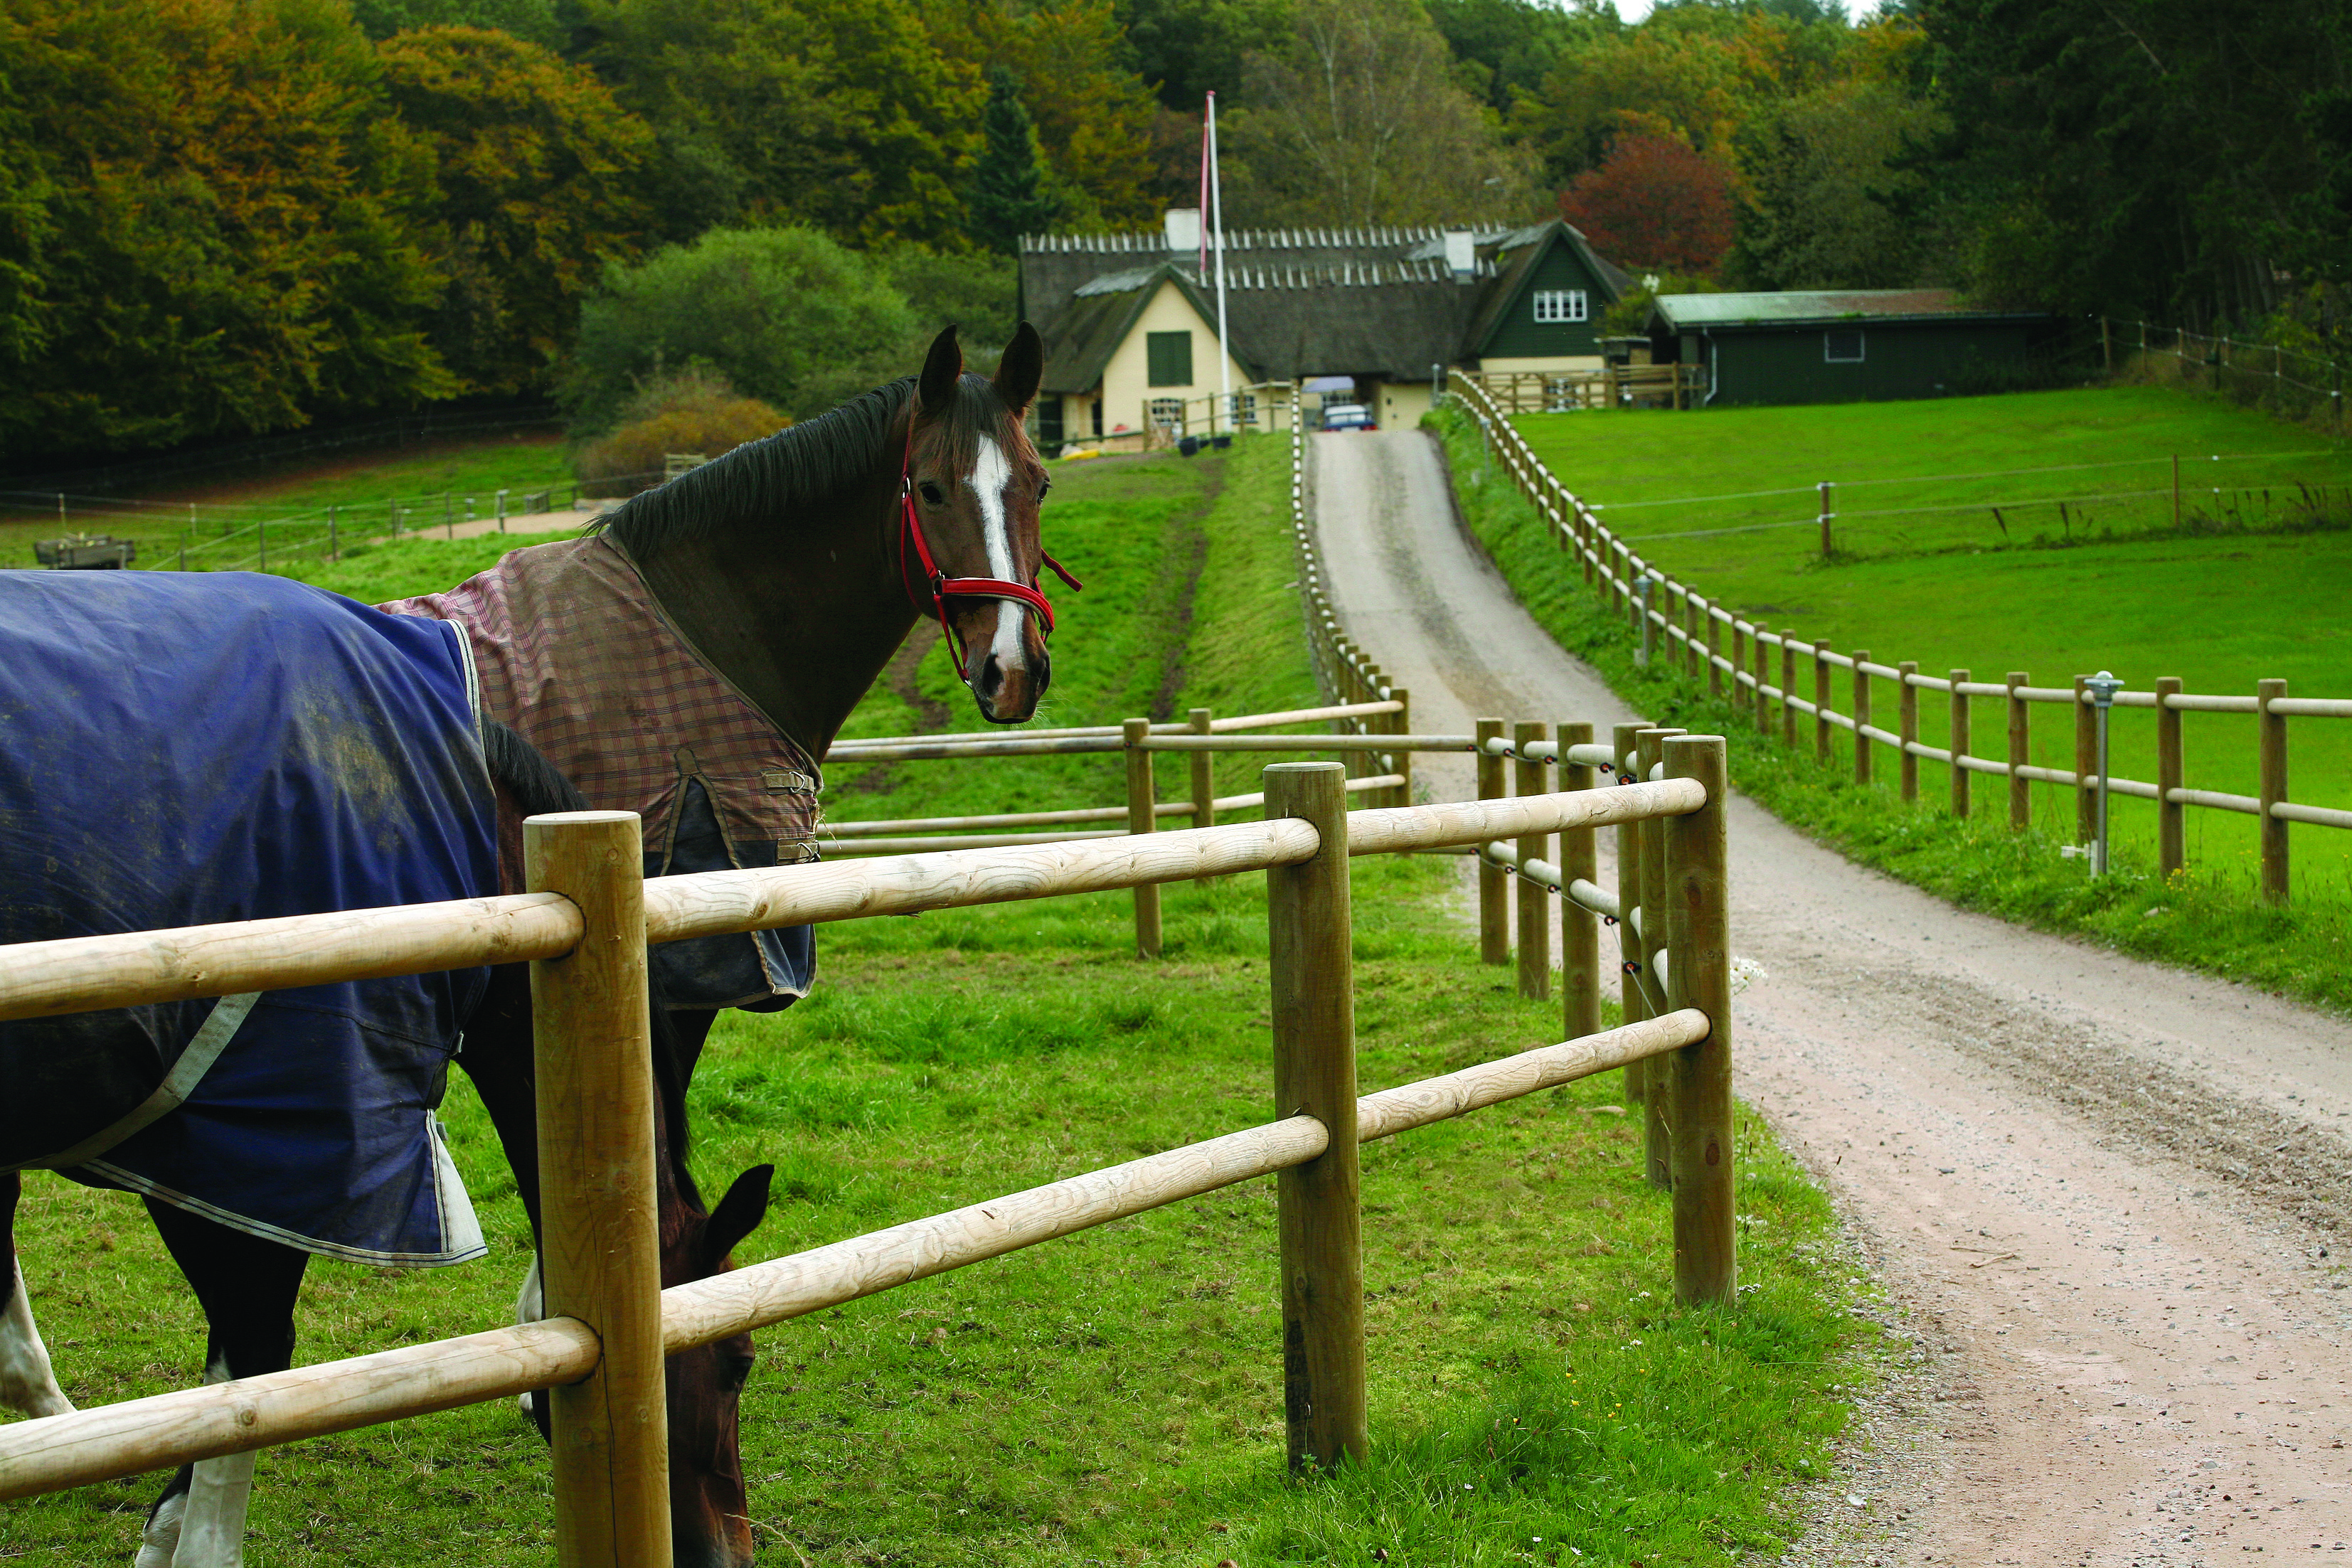 En häst står med upphöjt huvud och observerar sin omgivning medan en annan häst betar. Båda hästarna står bakom ett häststängsel längs infarten till ett lantställe.